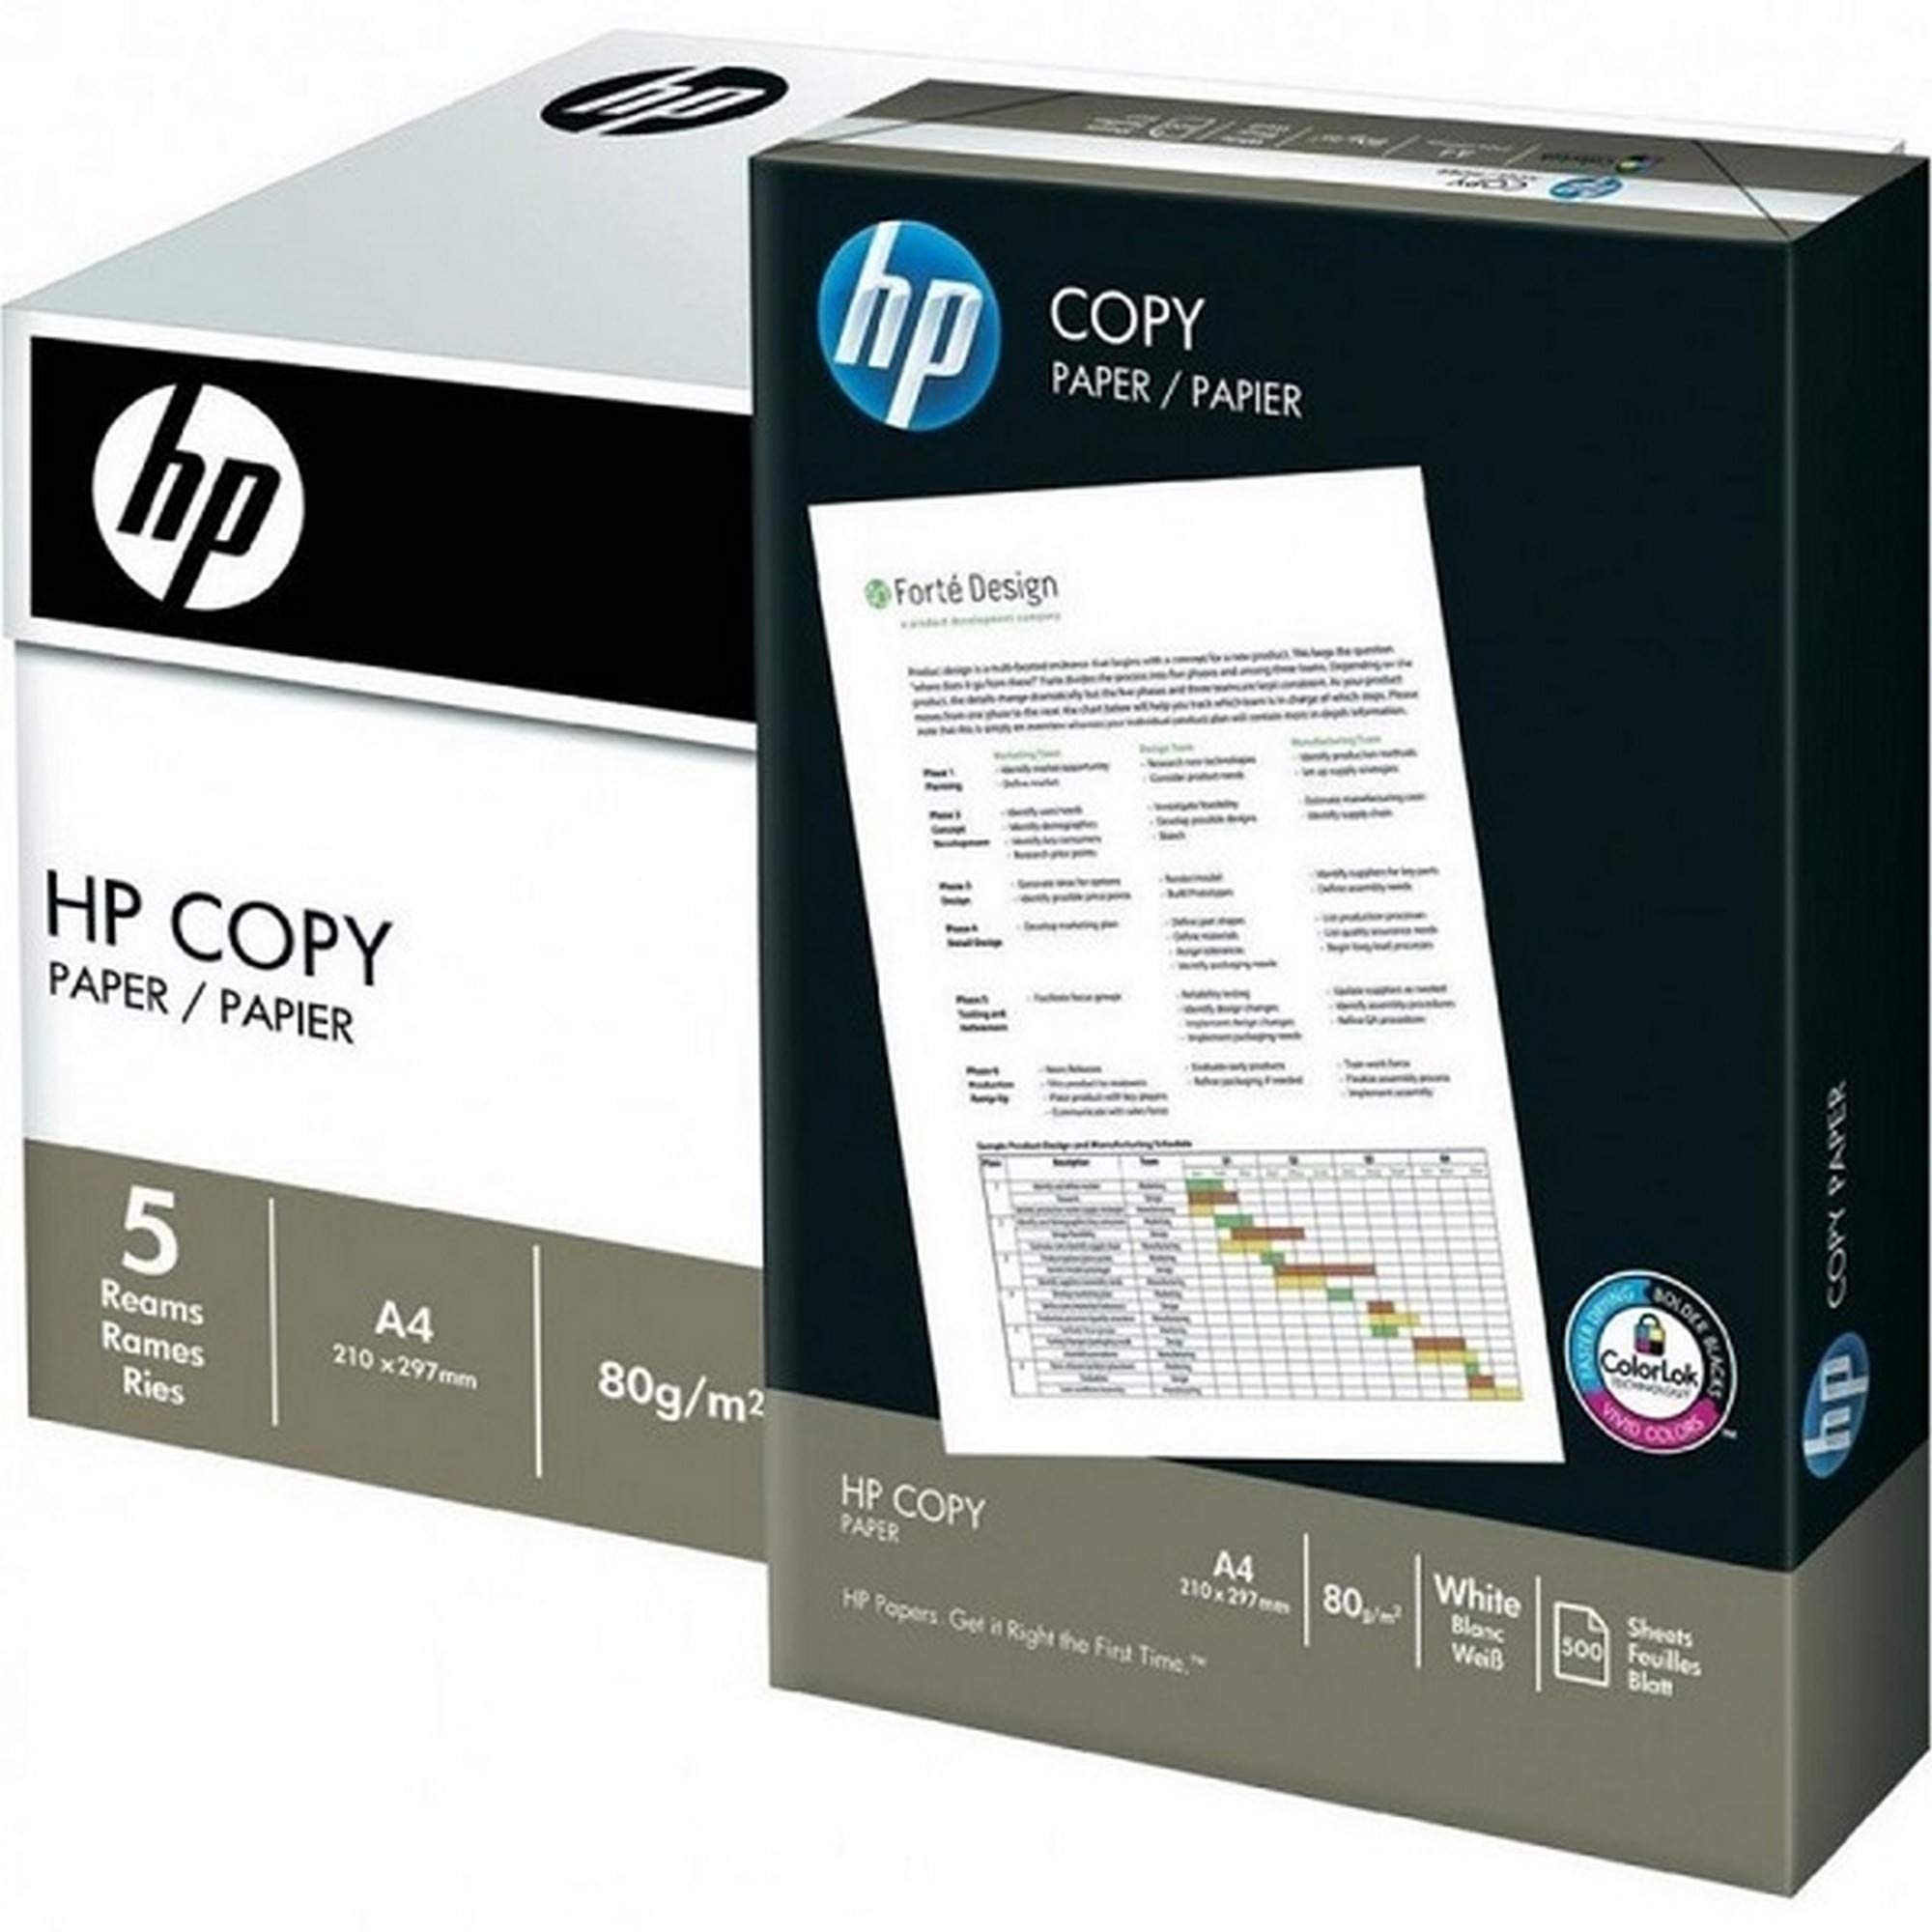 Druckerpapier, Kopierpapier weiß A4 80g/m² mit ColorLok-Technologie, 2500 Blatt von HP Hewlett Packard